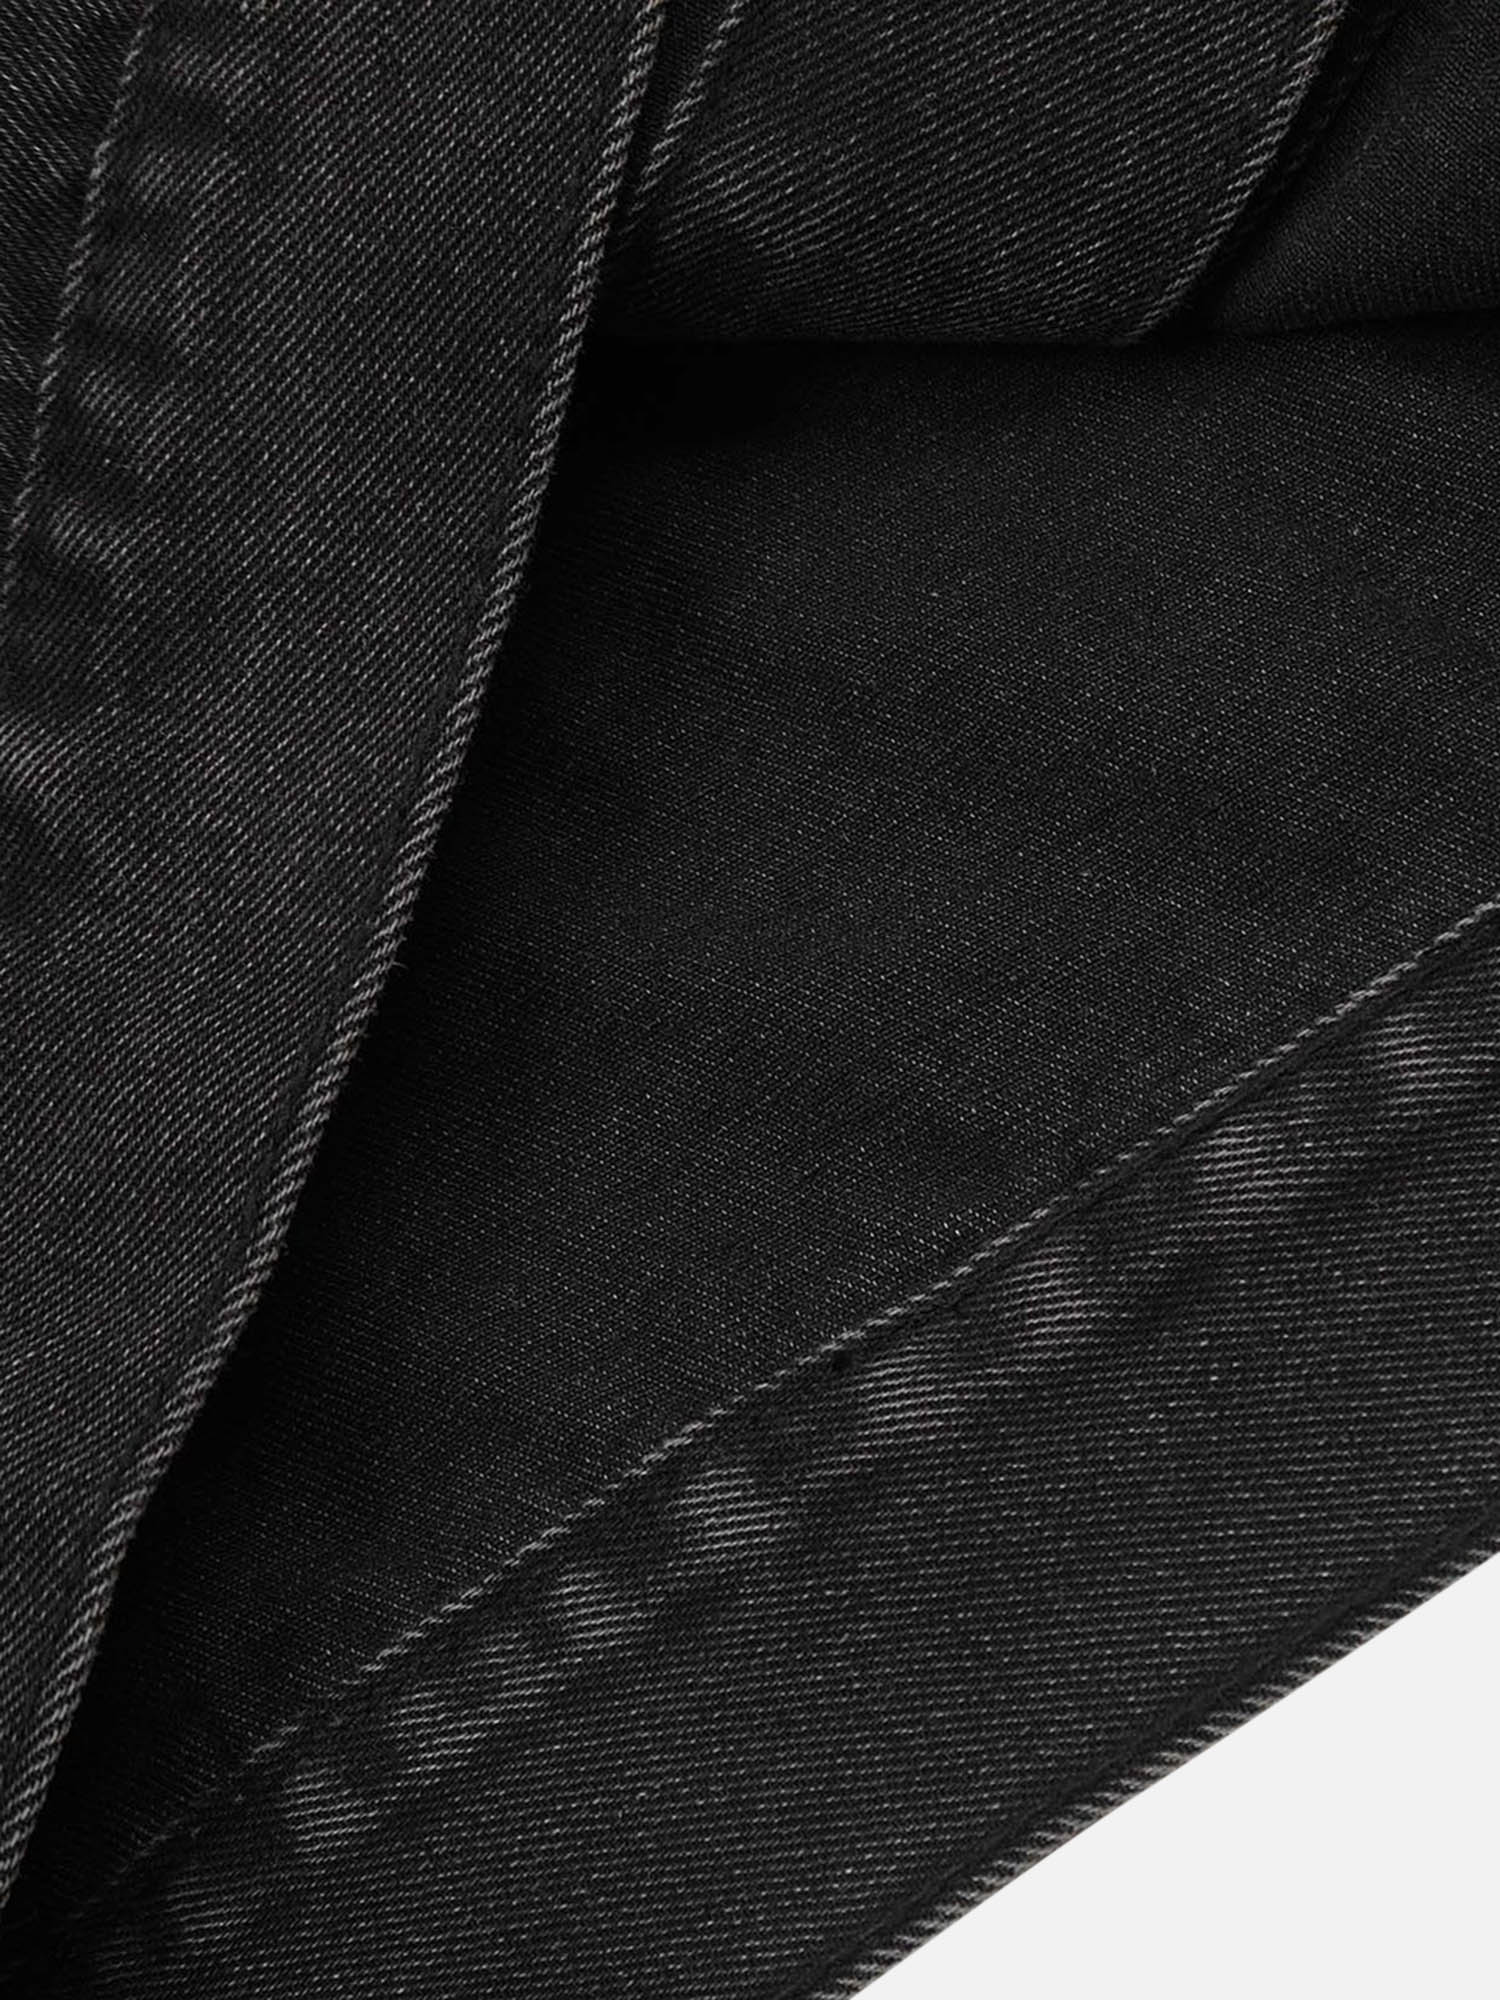 Thesupermade Dark Spider Web Letter Embroidered Denim Vest Jacket